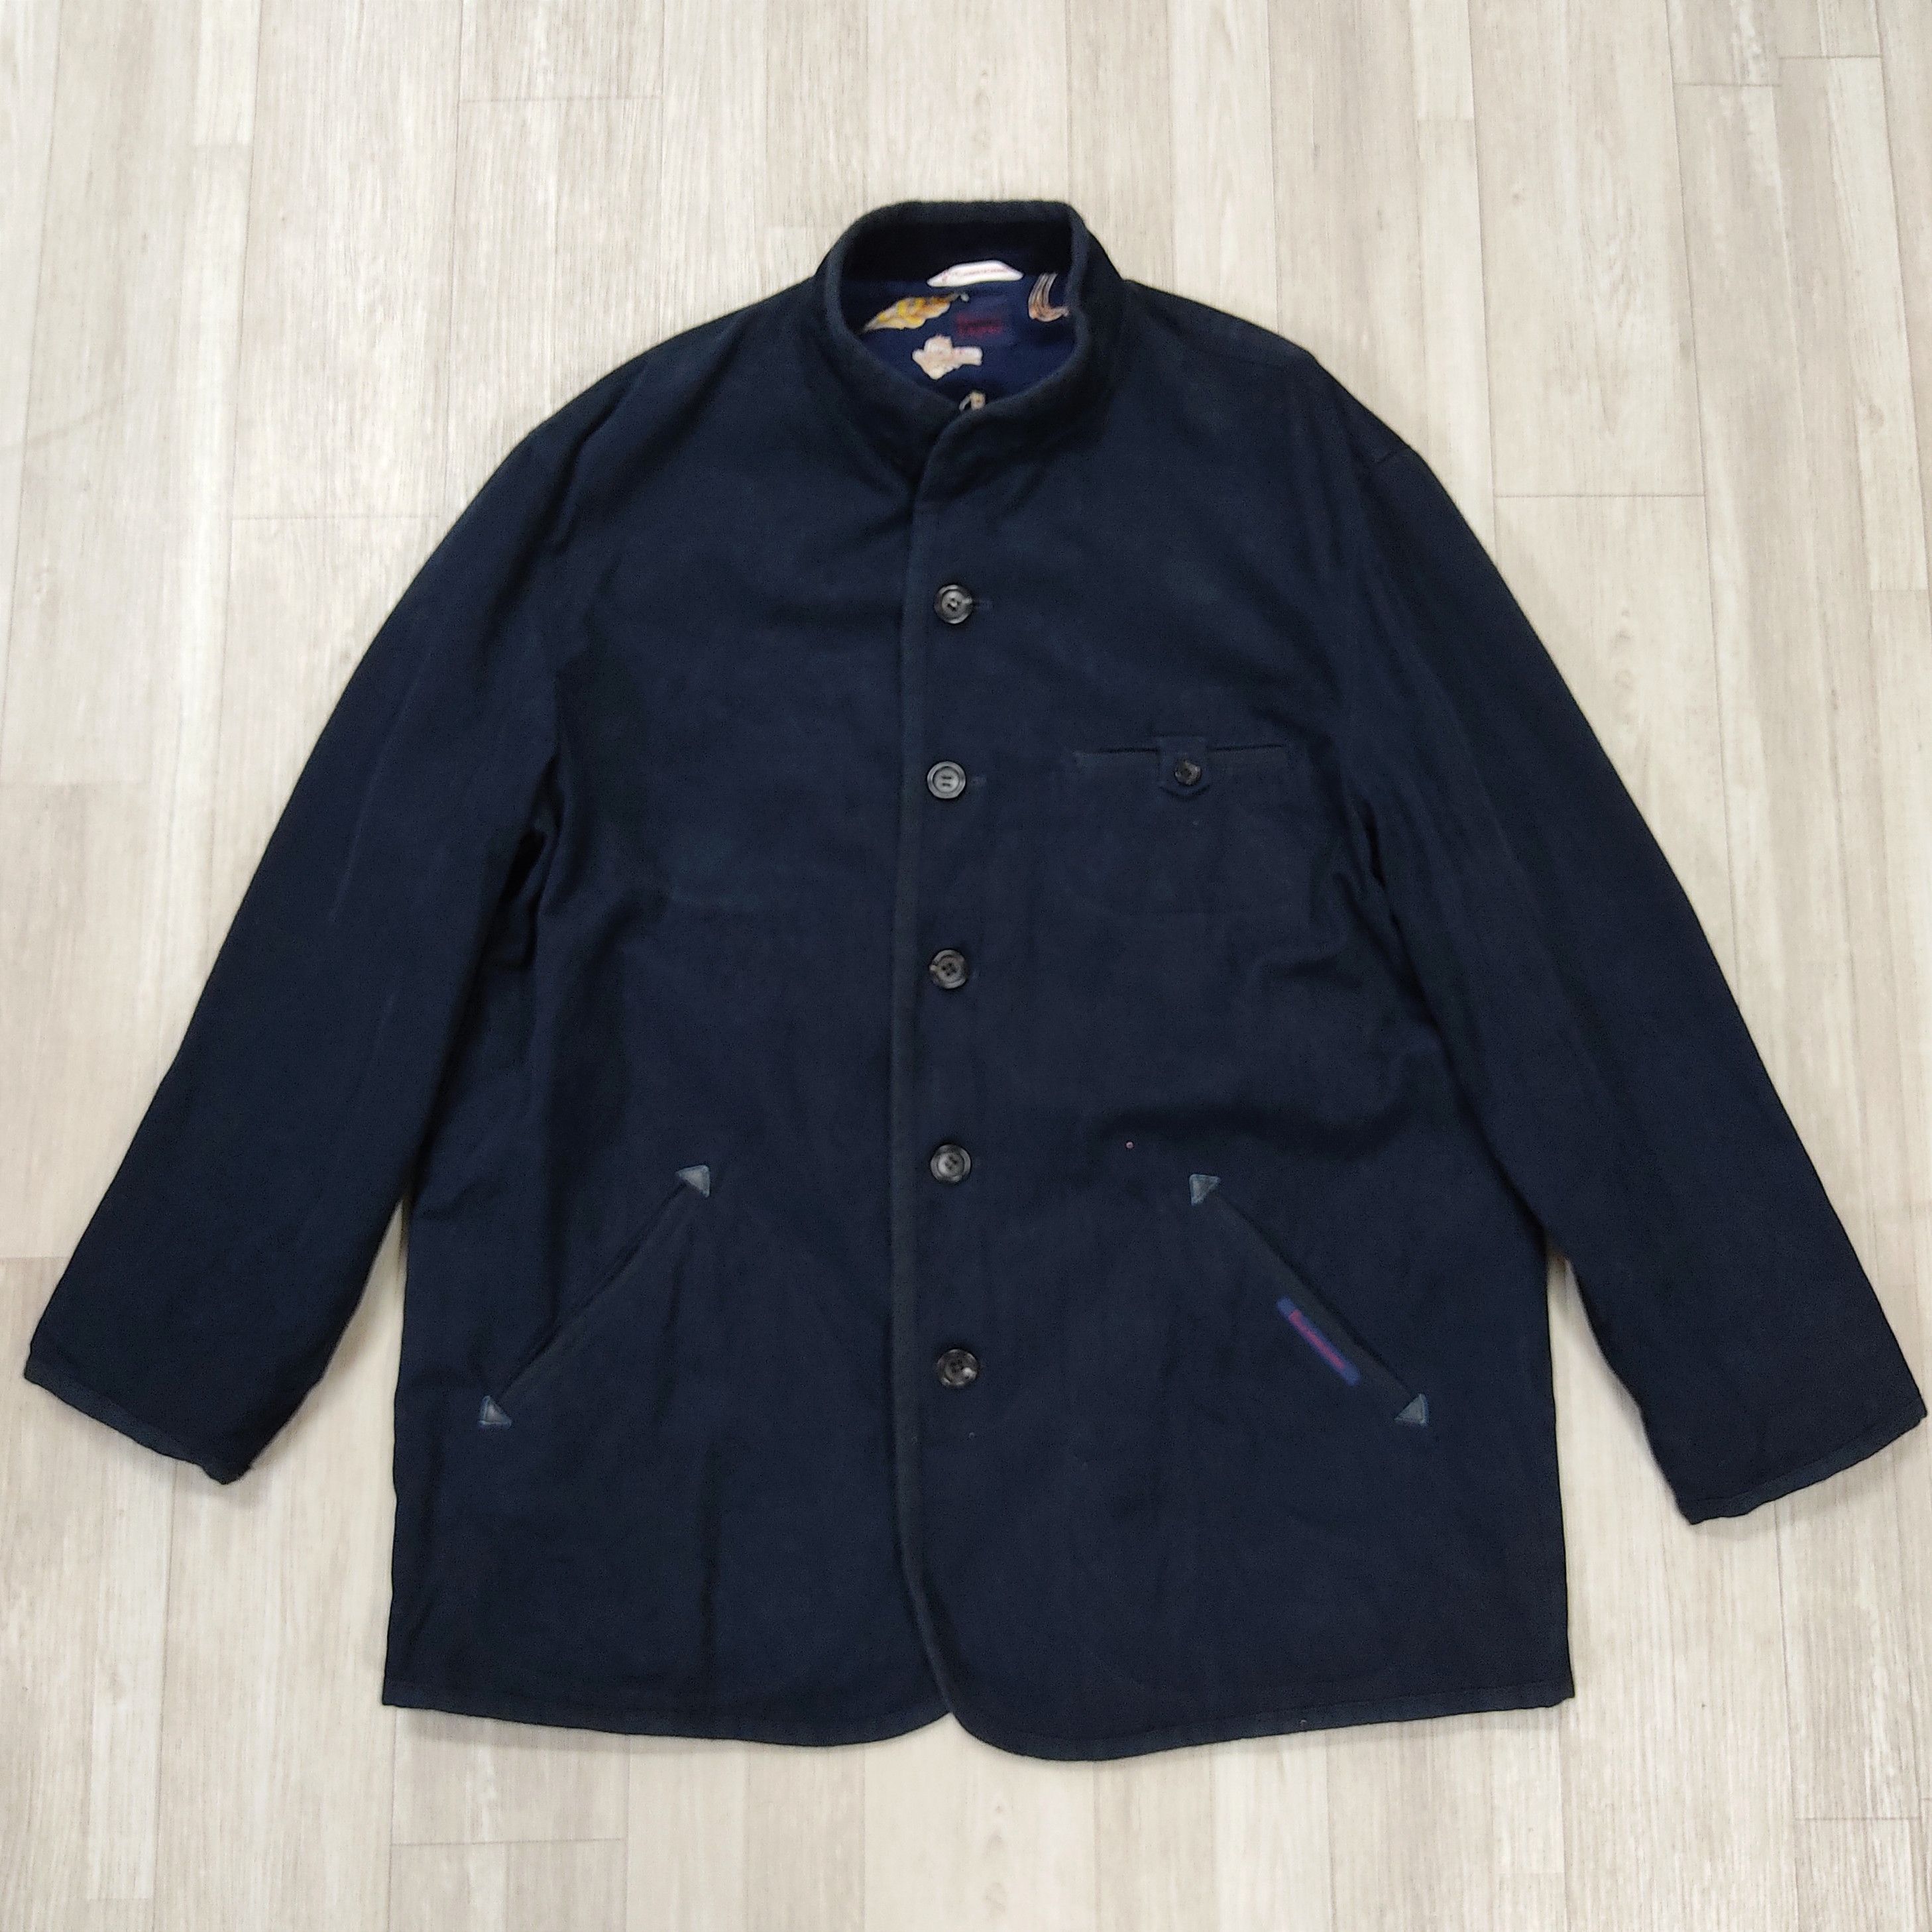 Archival Clothing - The PAPAS Mantere De Heming Navy Blue Deck Jacket - 2